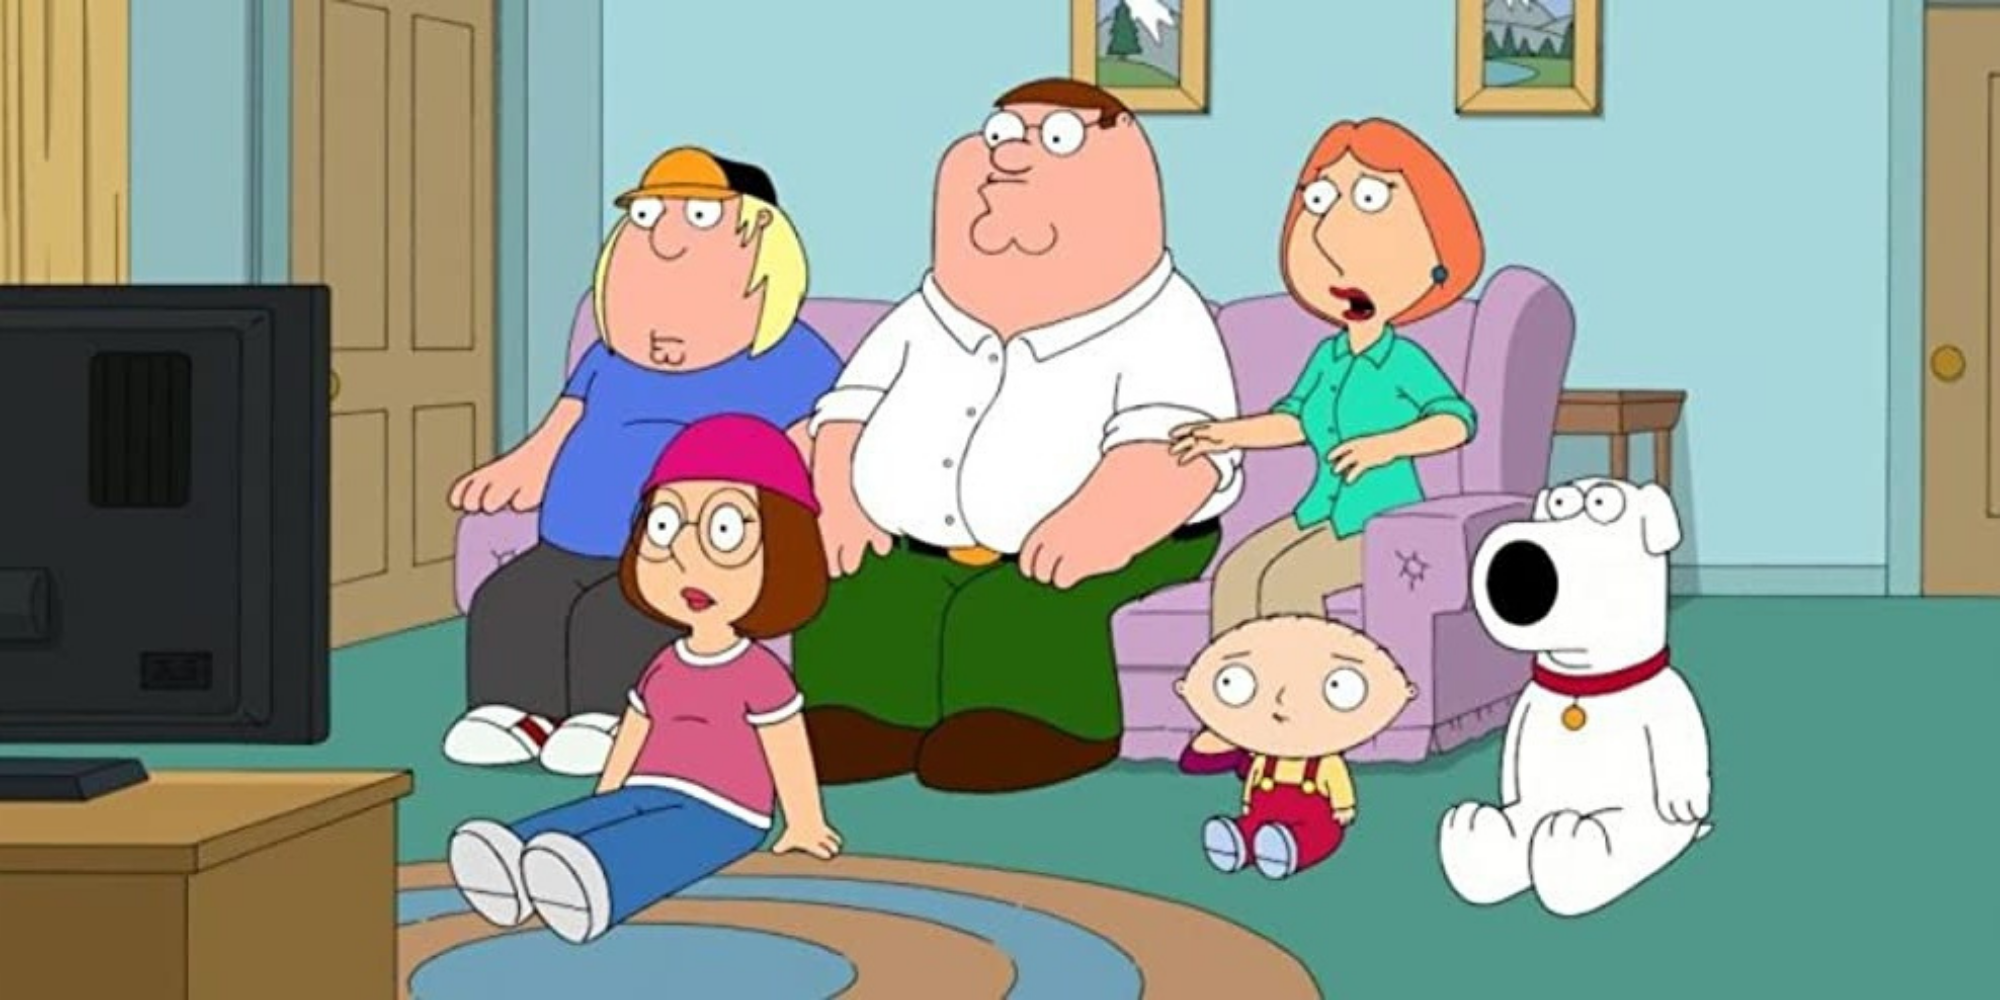 La famille Griffin est choquée par quelque chose sur leur télévision.